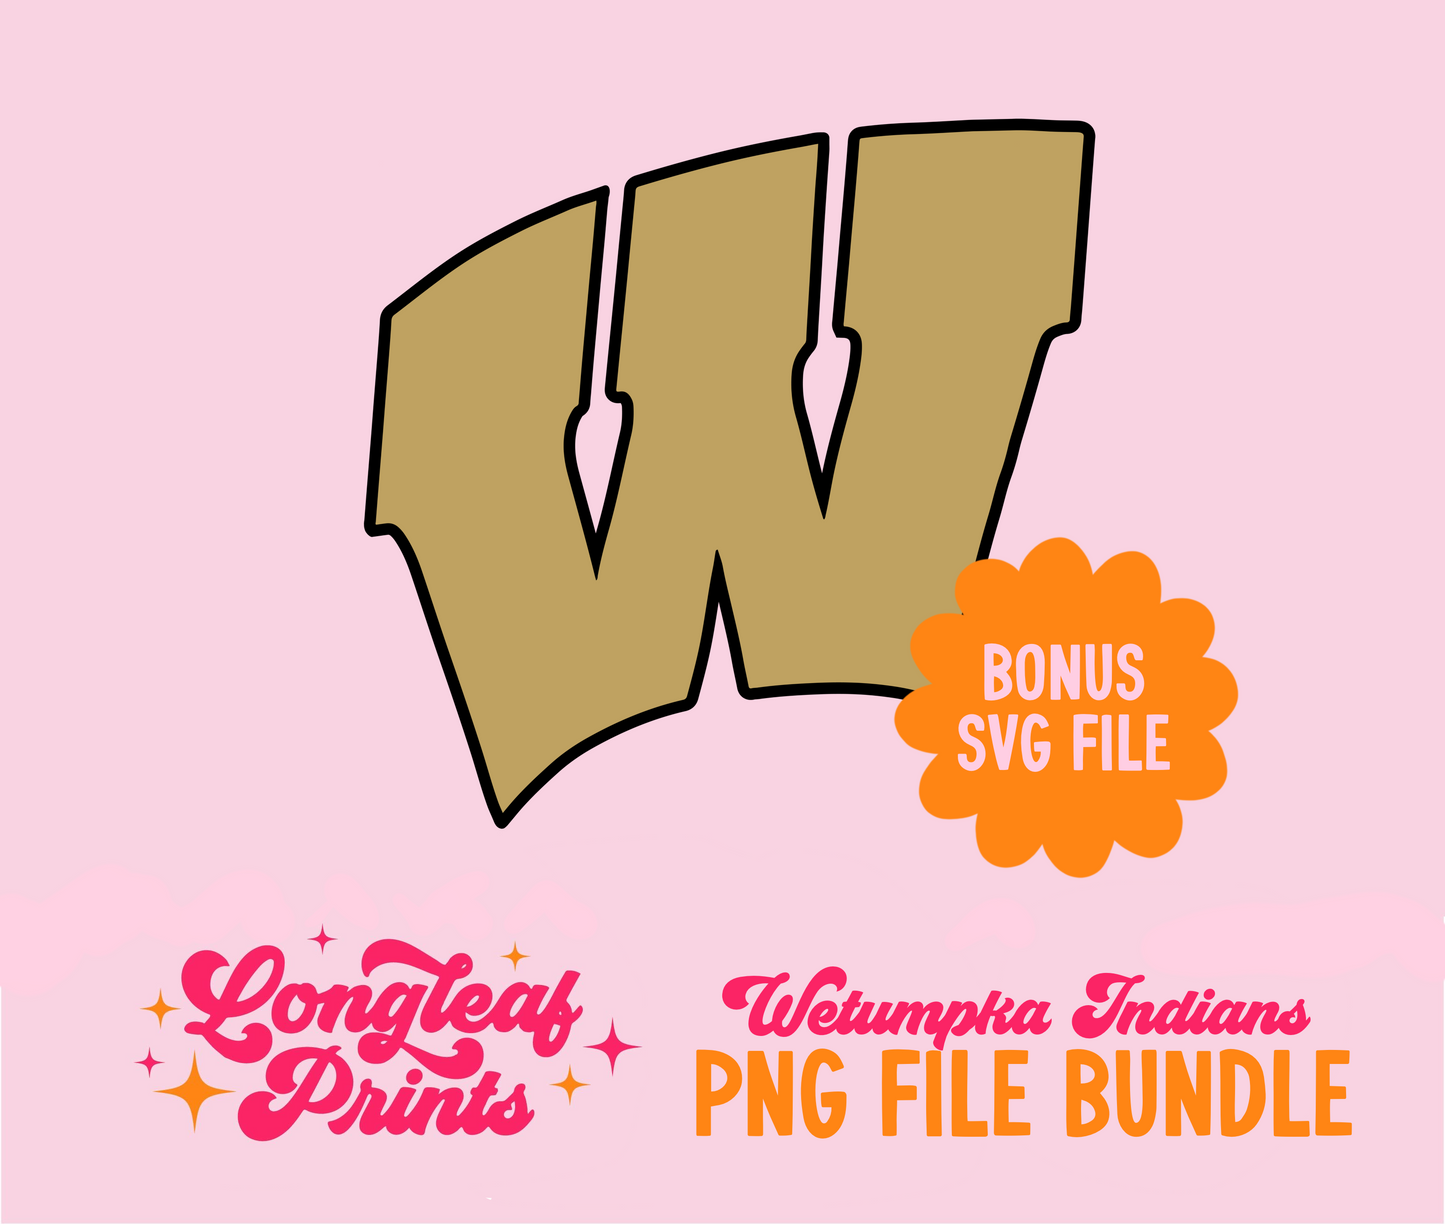 Wetumpka Indians PNG File Bundle Digital Download Designs